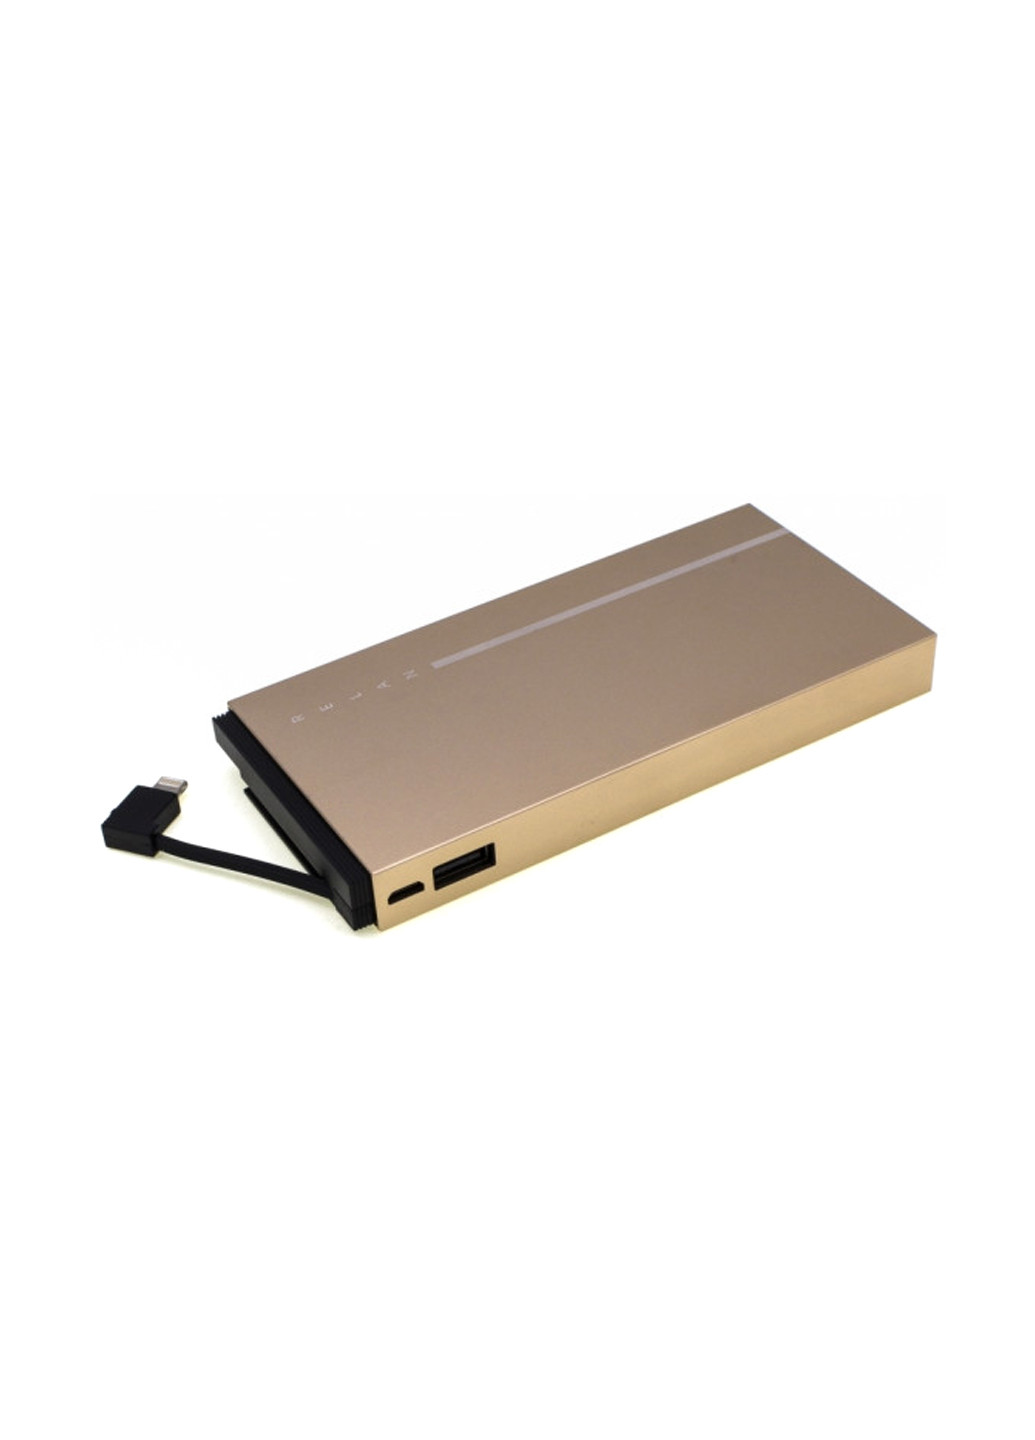 Портативное зарядное устройство Relan 10000mAh 2USB-2A with 2in1 gold (павербанк) Remax RPP-65-GOLD